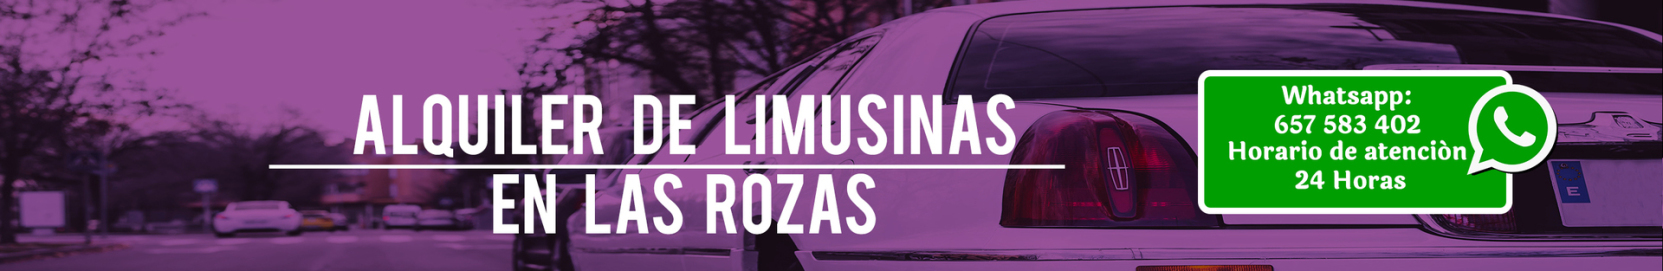 Alquiler de limusinas en Las Rozas